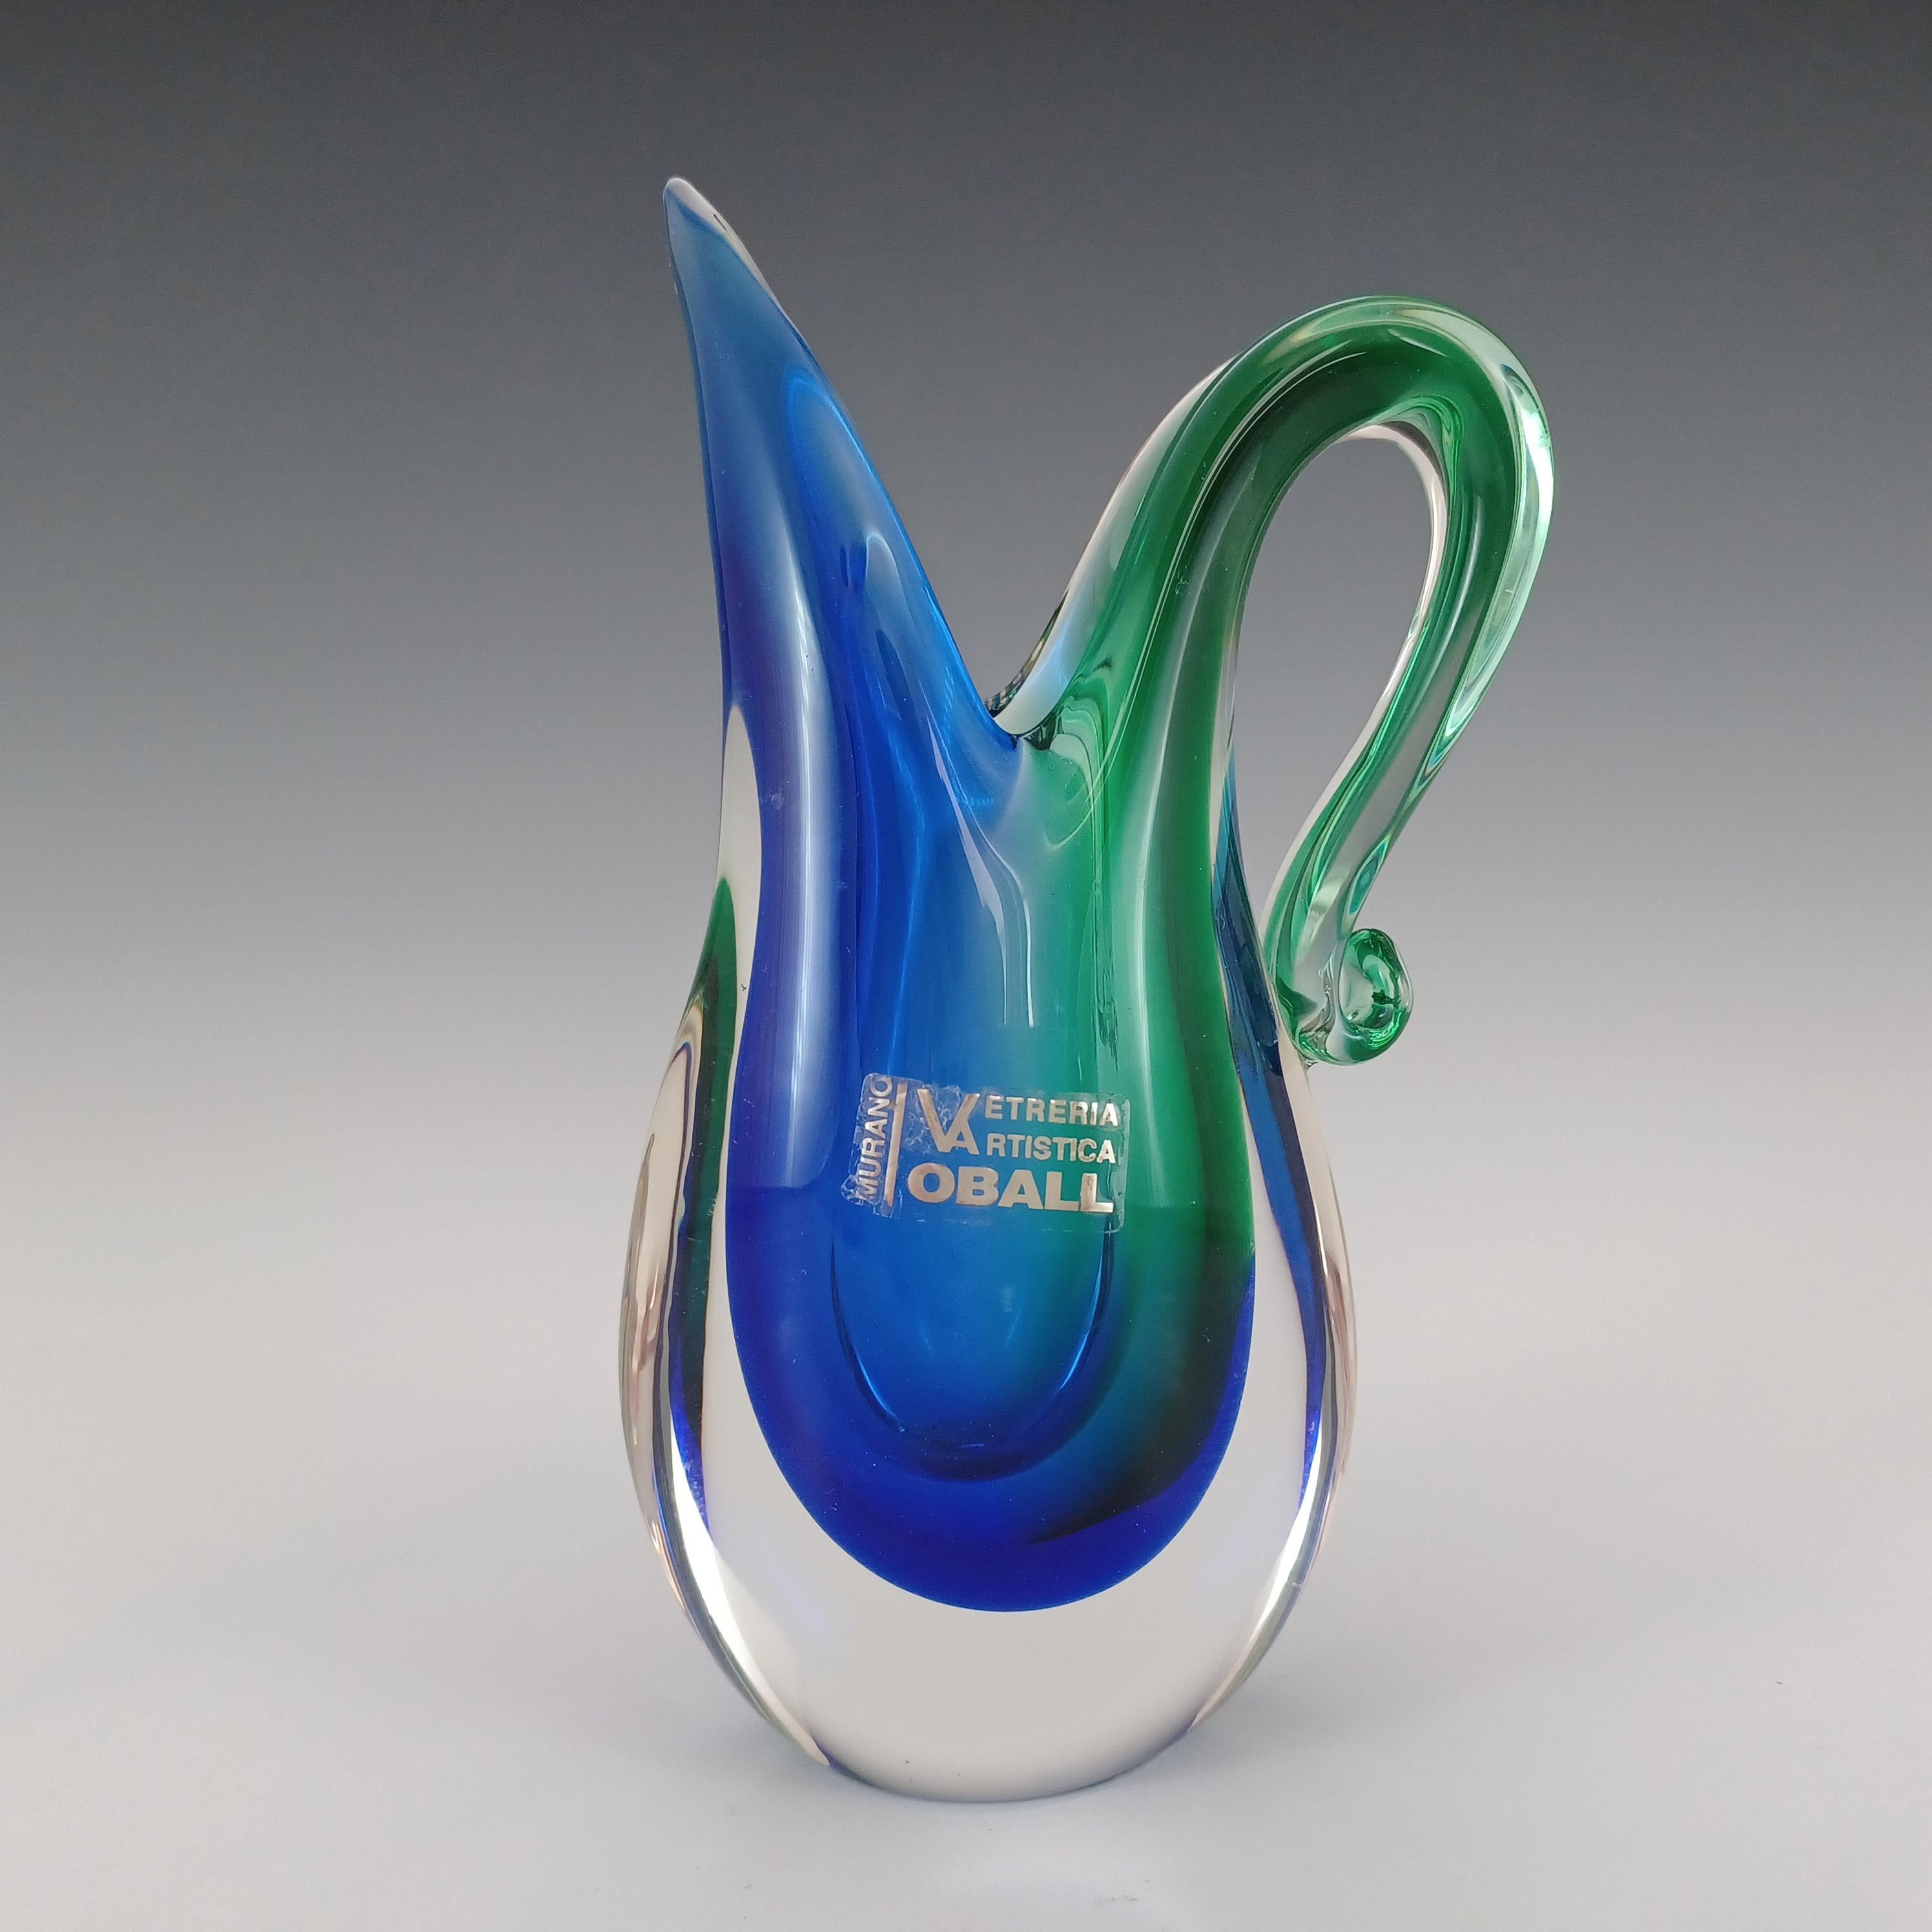 Voici un magnifique vase de forme organique en verre vénitien. Fabriqué sur l'île de Murano, près de Venise, en Italie, par la verrerie Oball, étiqueté. Dans une étonnante combinaison de verre bleu et vert encastré dans du verre transparent, selon